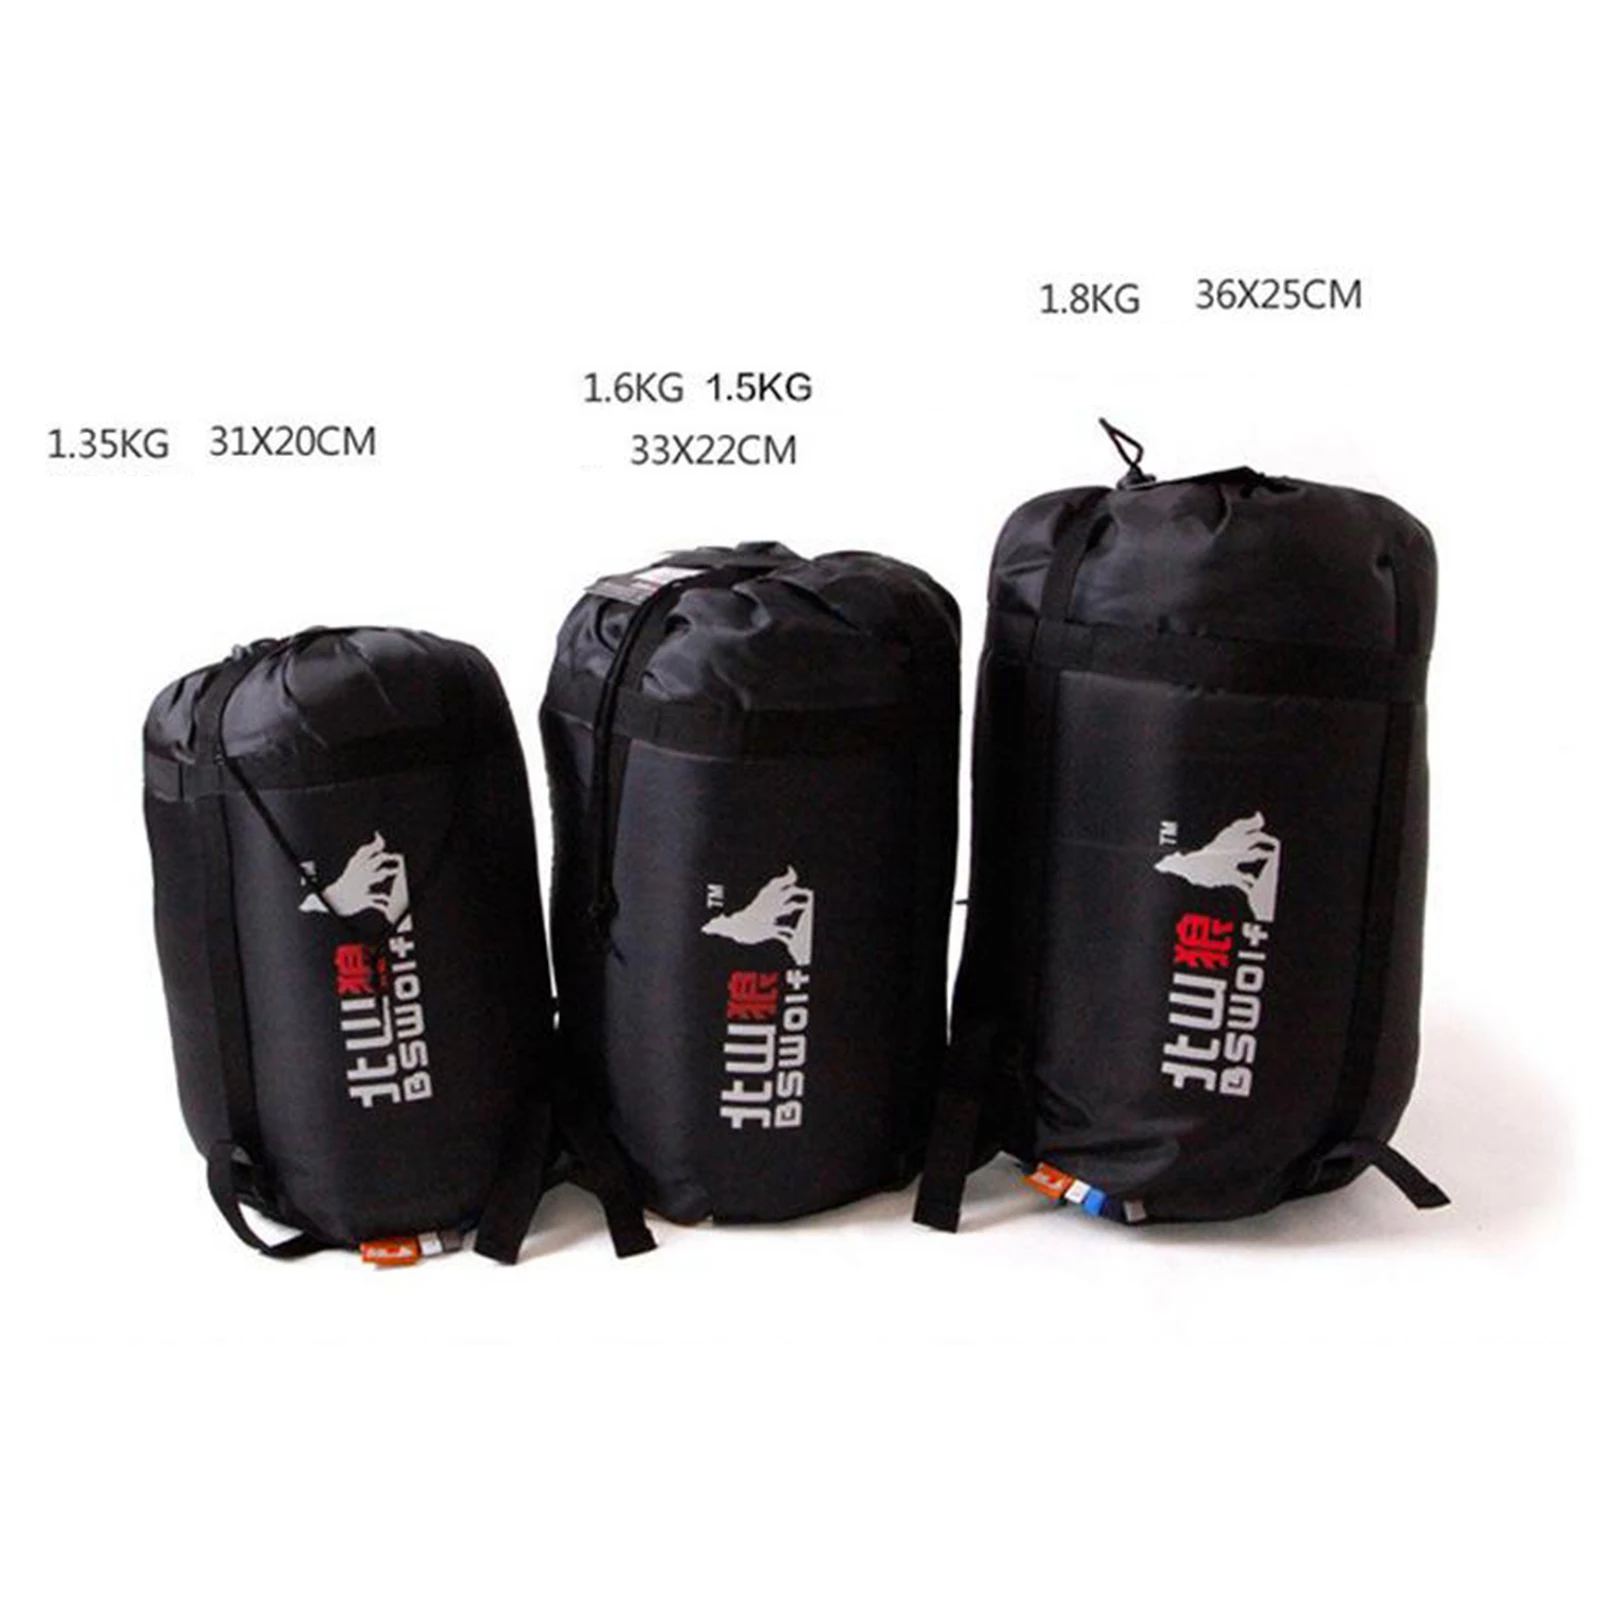 3-4 Season Sleeping Bag Single Suit Case Camping Hiking Outdoor Envelope Zip Up Sleeping Bag Waterproof Backpacking